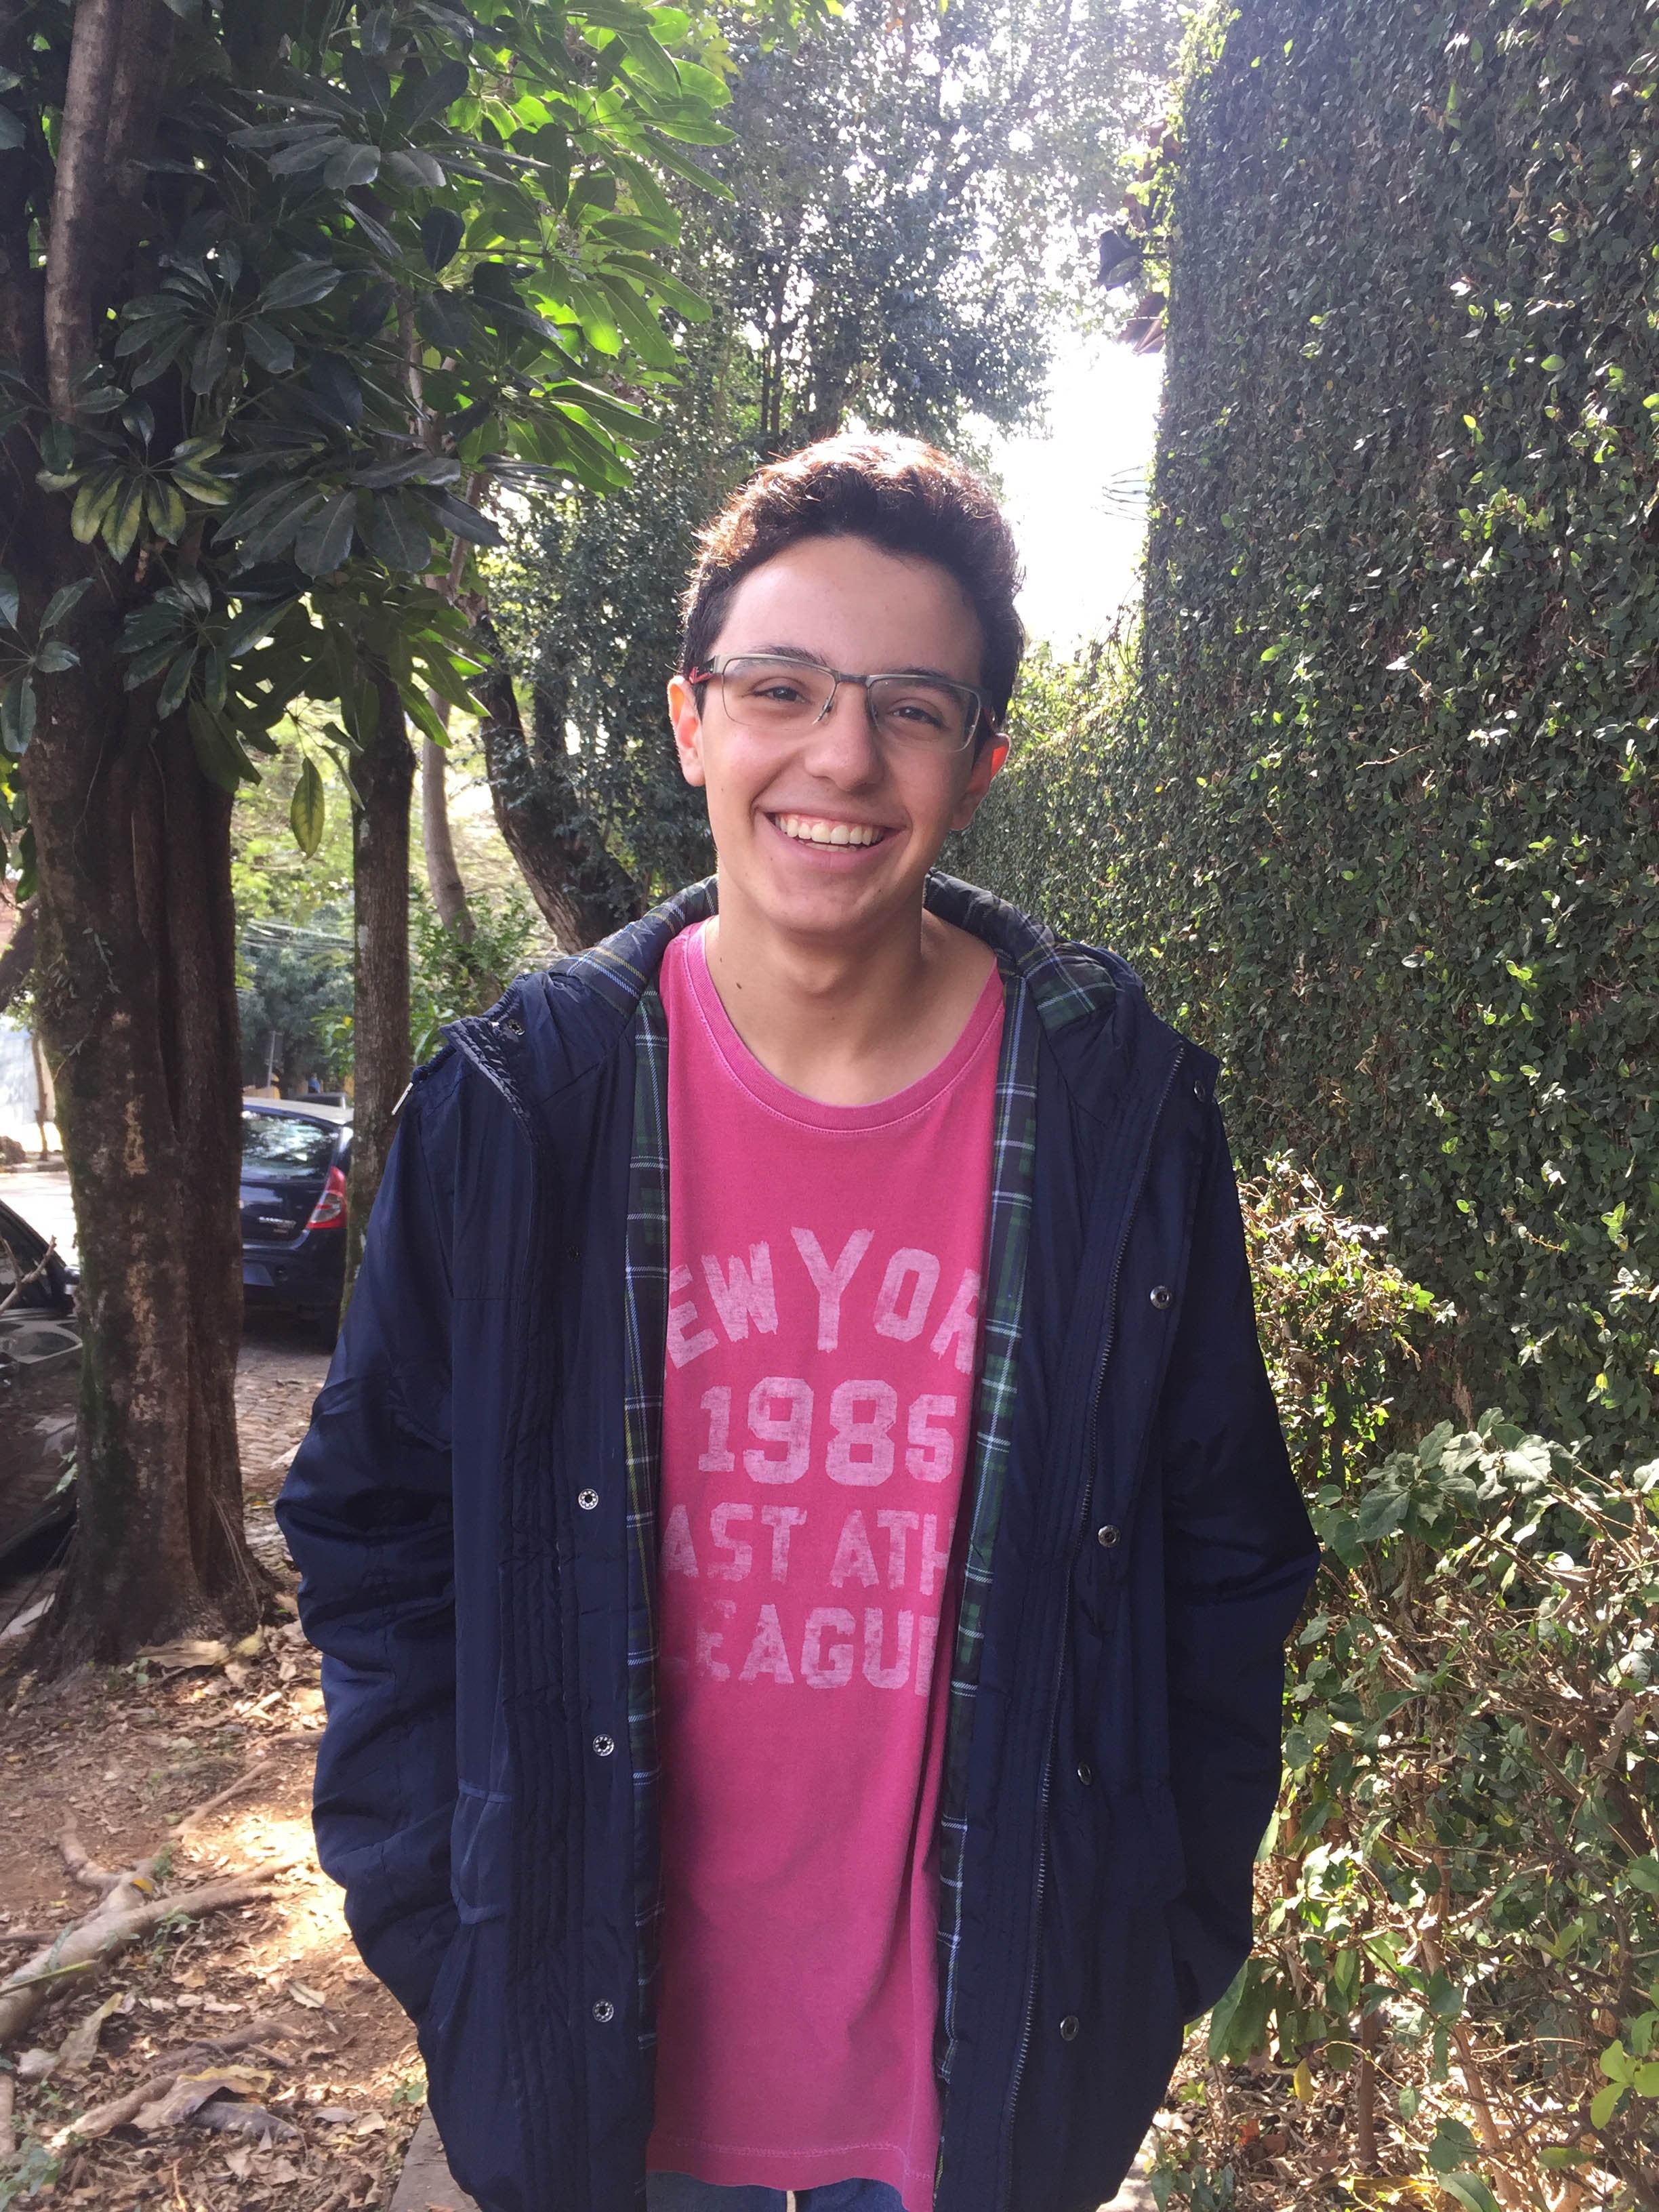 Danilo Bissoli Apendino - tem 16 anos, é de São Paulo (SP) e cursa o 3º ano do ensino médio no colégio Etapa (Foto: divulgação)